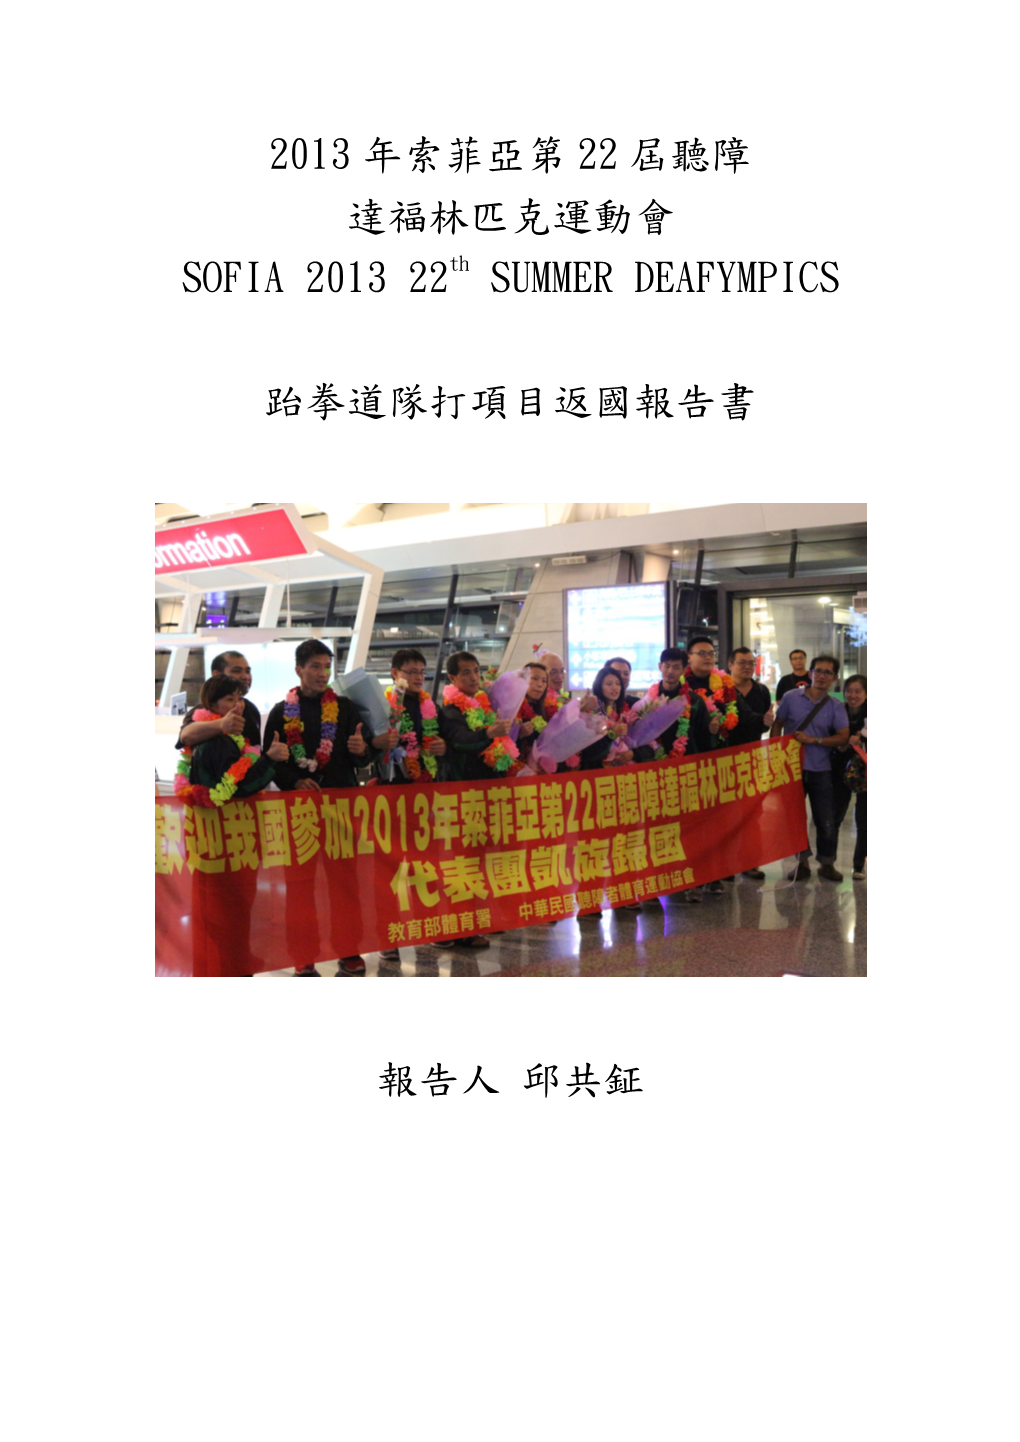 2013 年索菲亞第22 屆聽障達福林匹克運動會SOFIA 2013 22Th SUMMER